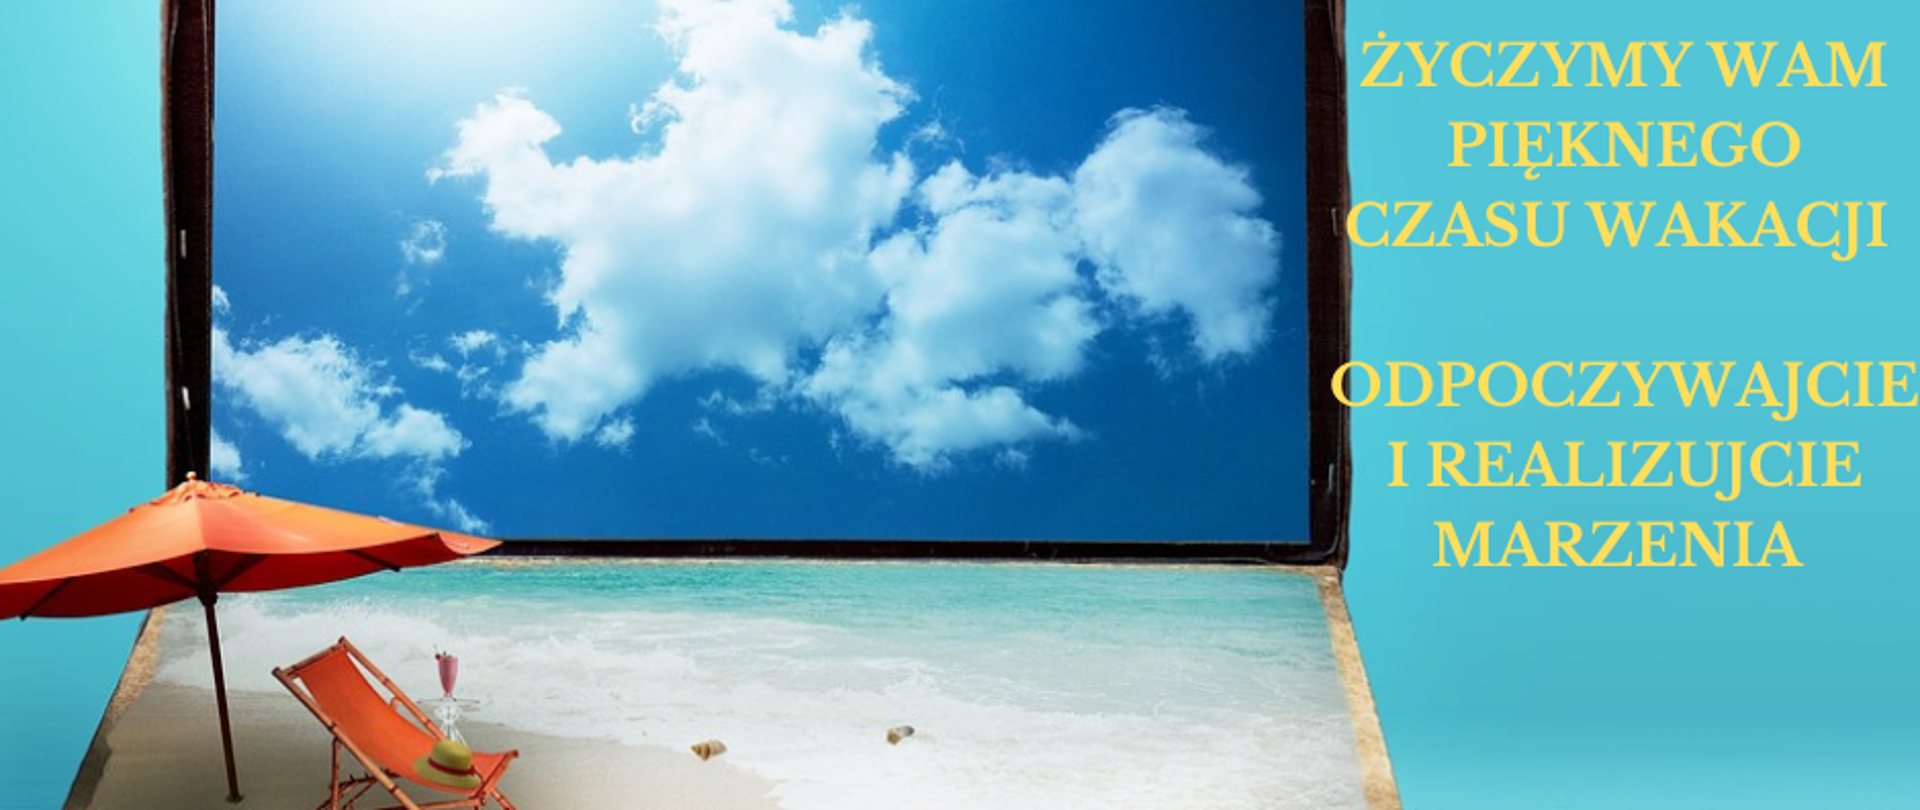 obraz starej walizki przypominającej formą laptopa. Leżak, parasol, piasek i błękitne niebo przypominają, że trwają wakacje. Po prawej stronie napis życzymy Wam pięknego czasu wakacji odpoczywajcie i realizujcie marzenia.